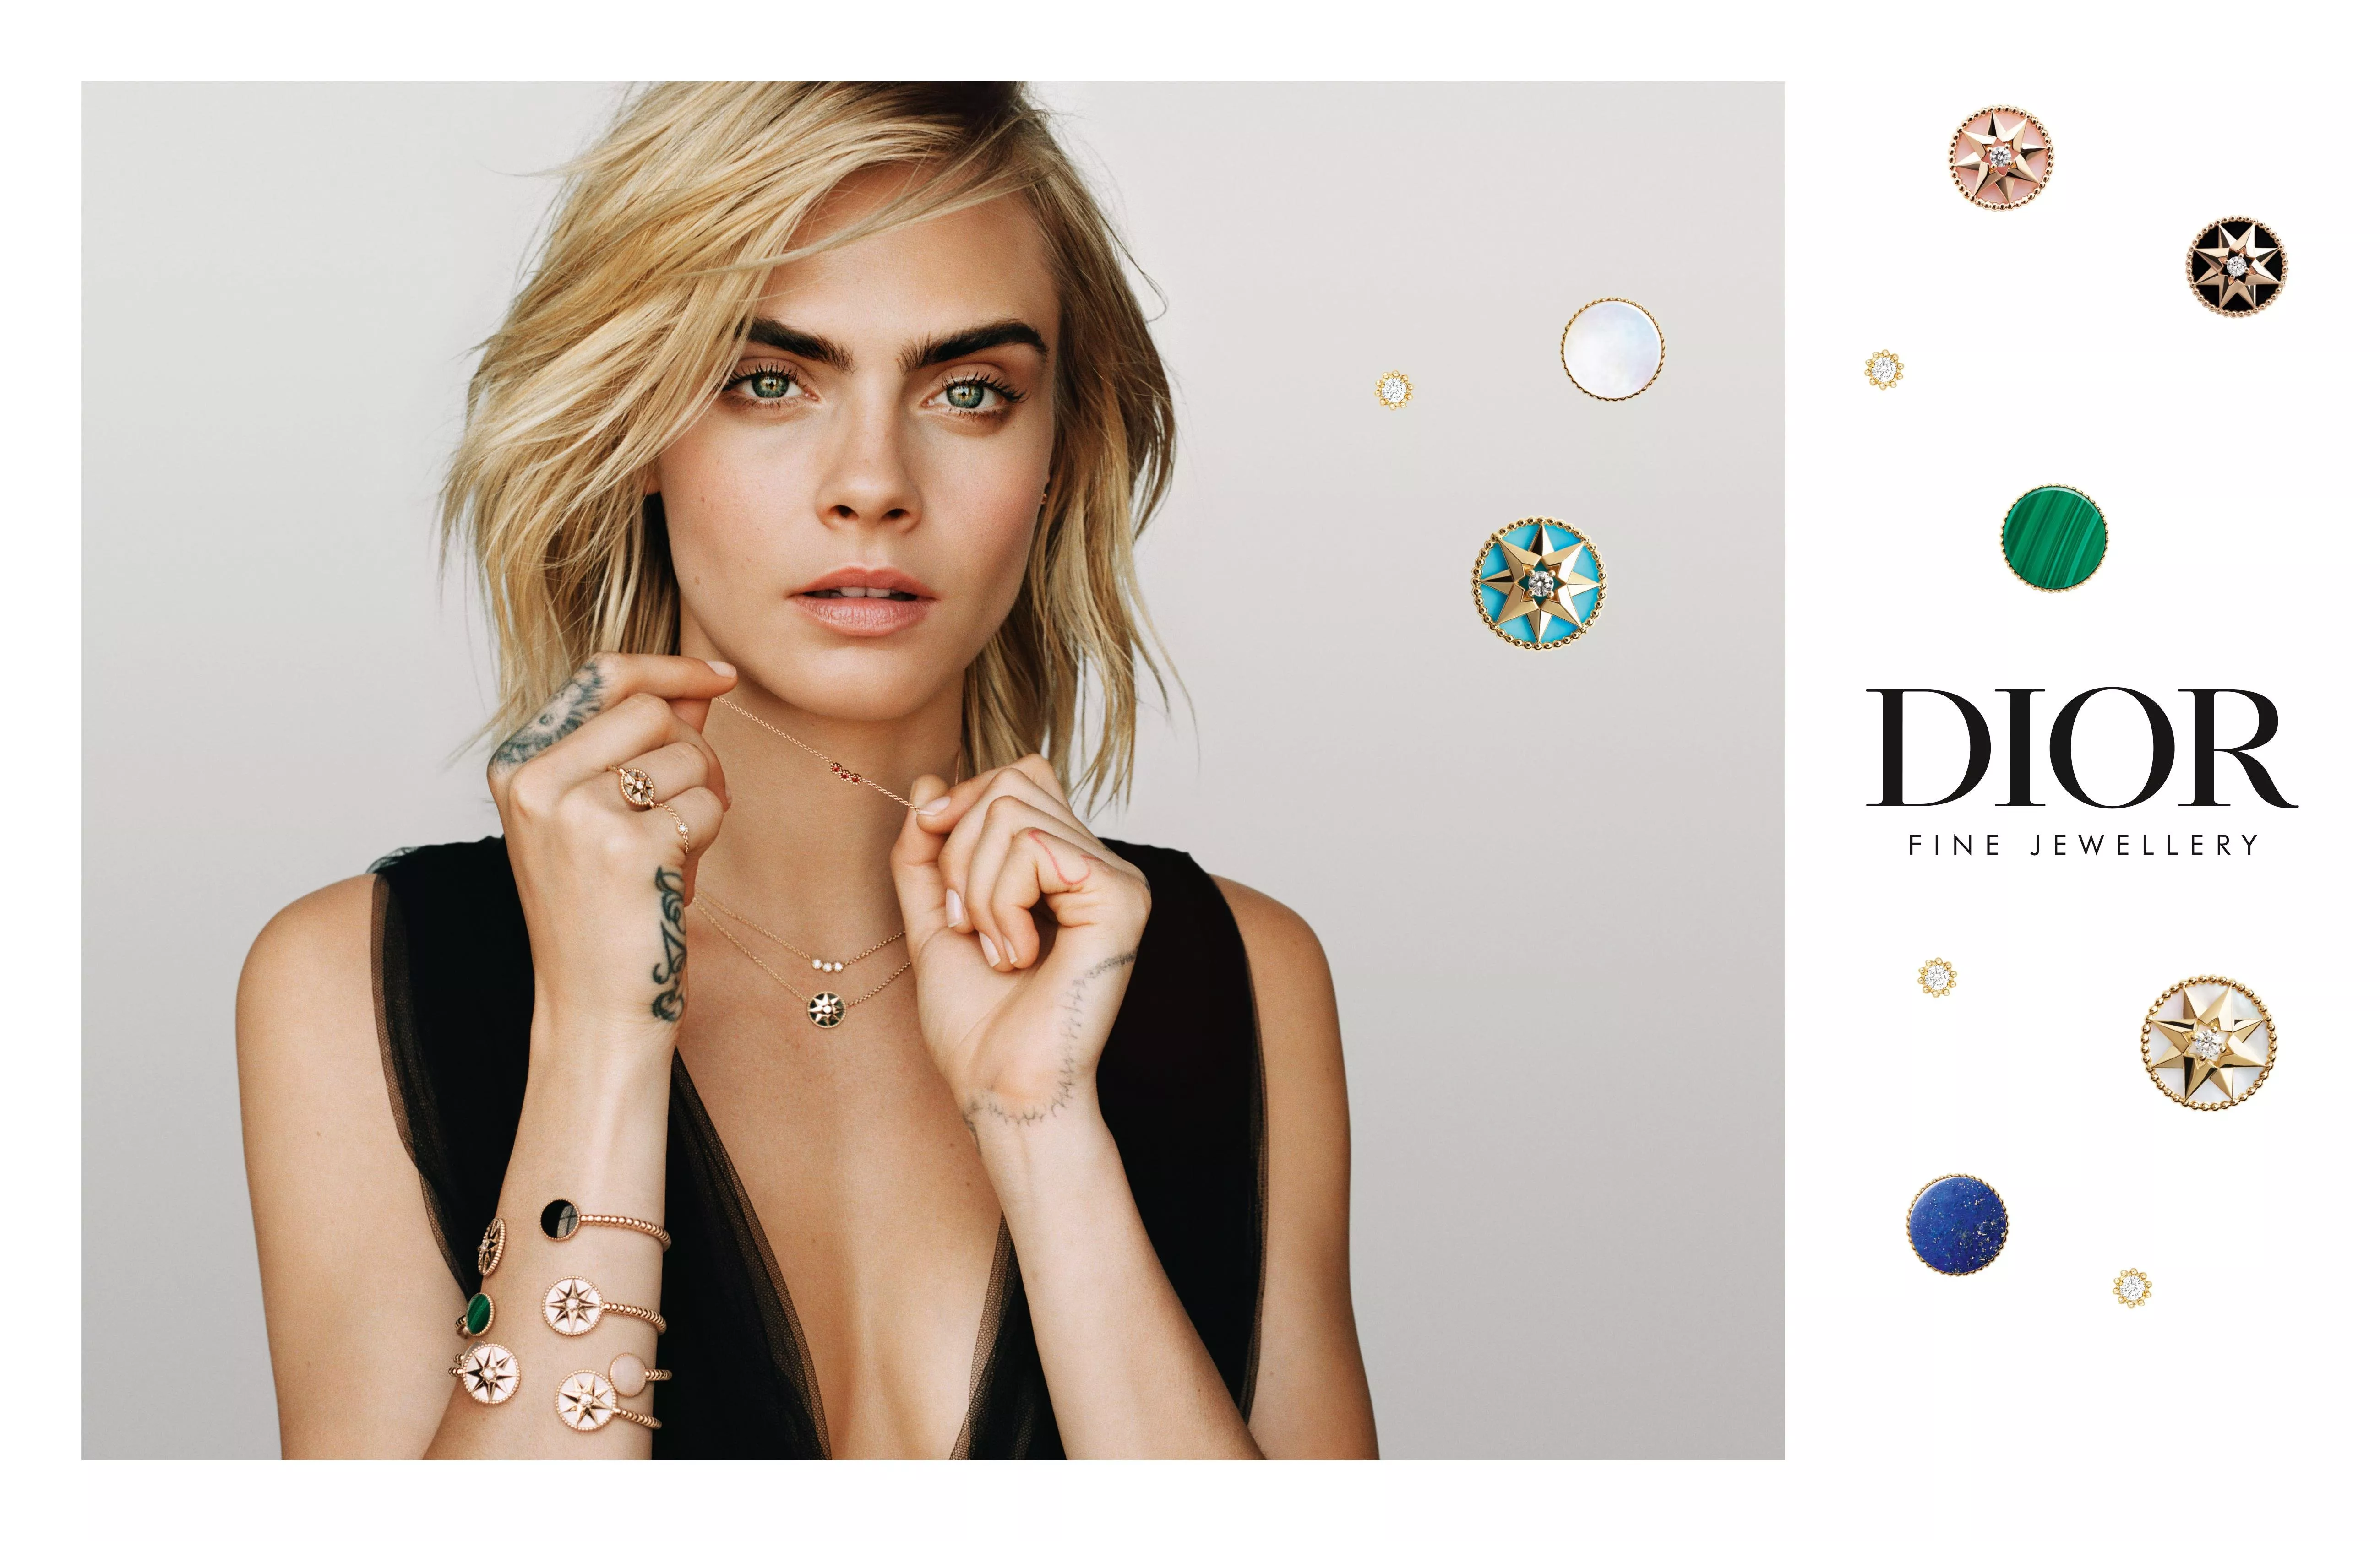 Dior تعلن عن الوجه الإعلاني الجديد لمجوهراتها: Cara Delevingne بطلة حملة Rose des Vents